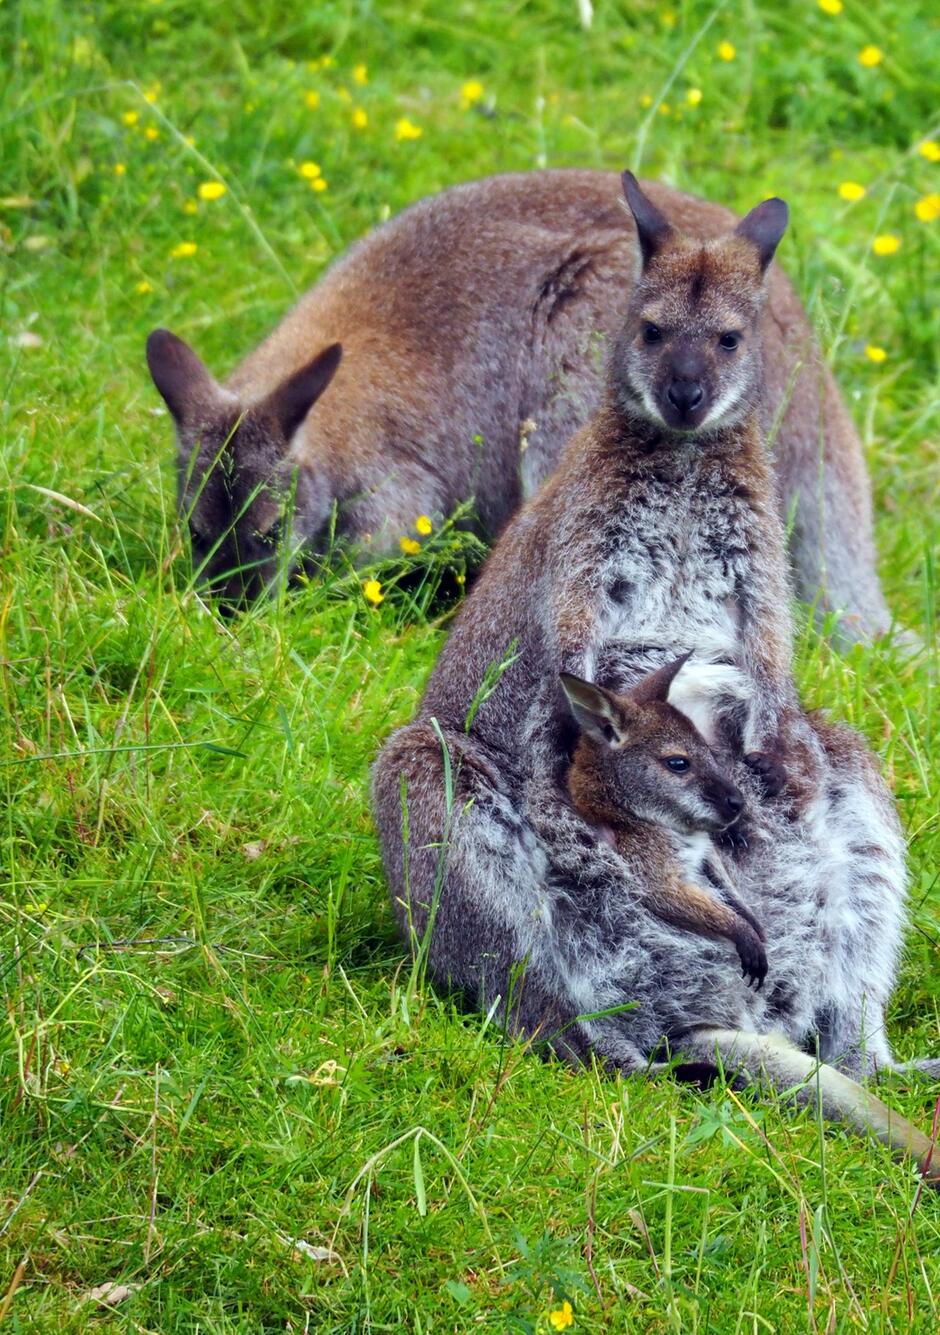 Na zdjęciu widać kangura rdzawoszyjego z młodym w torbie, siedzącego na zielonej trawie. W tle znajduje się drugi kangur, który skubie trawę wśród żółtych kwiatów.